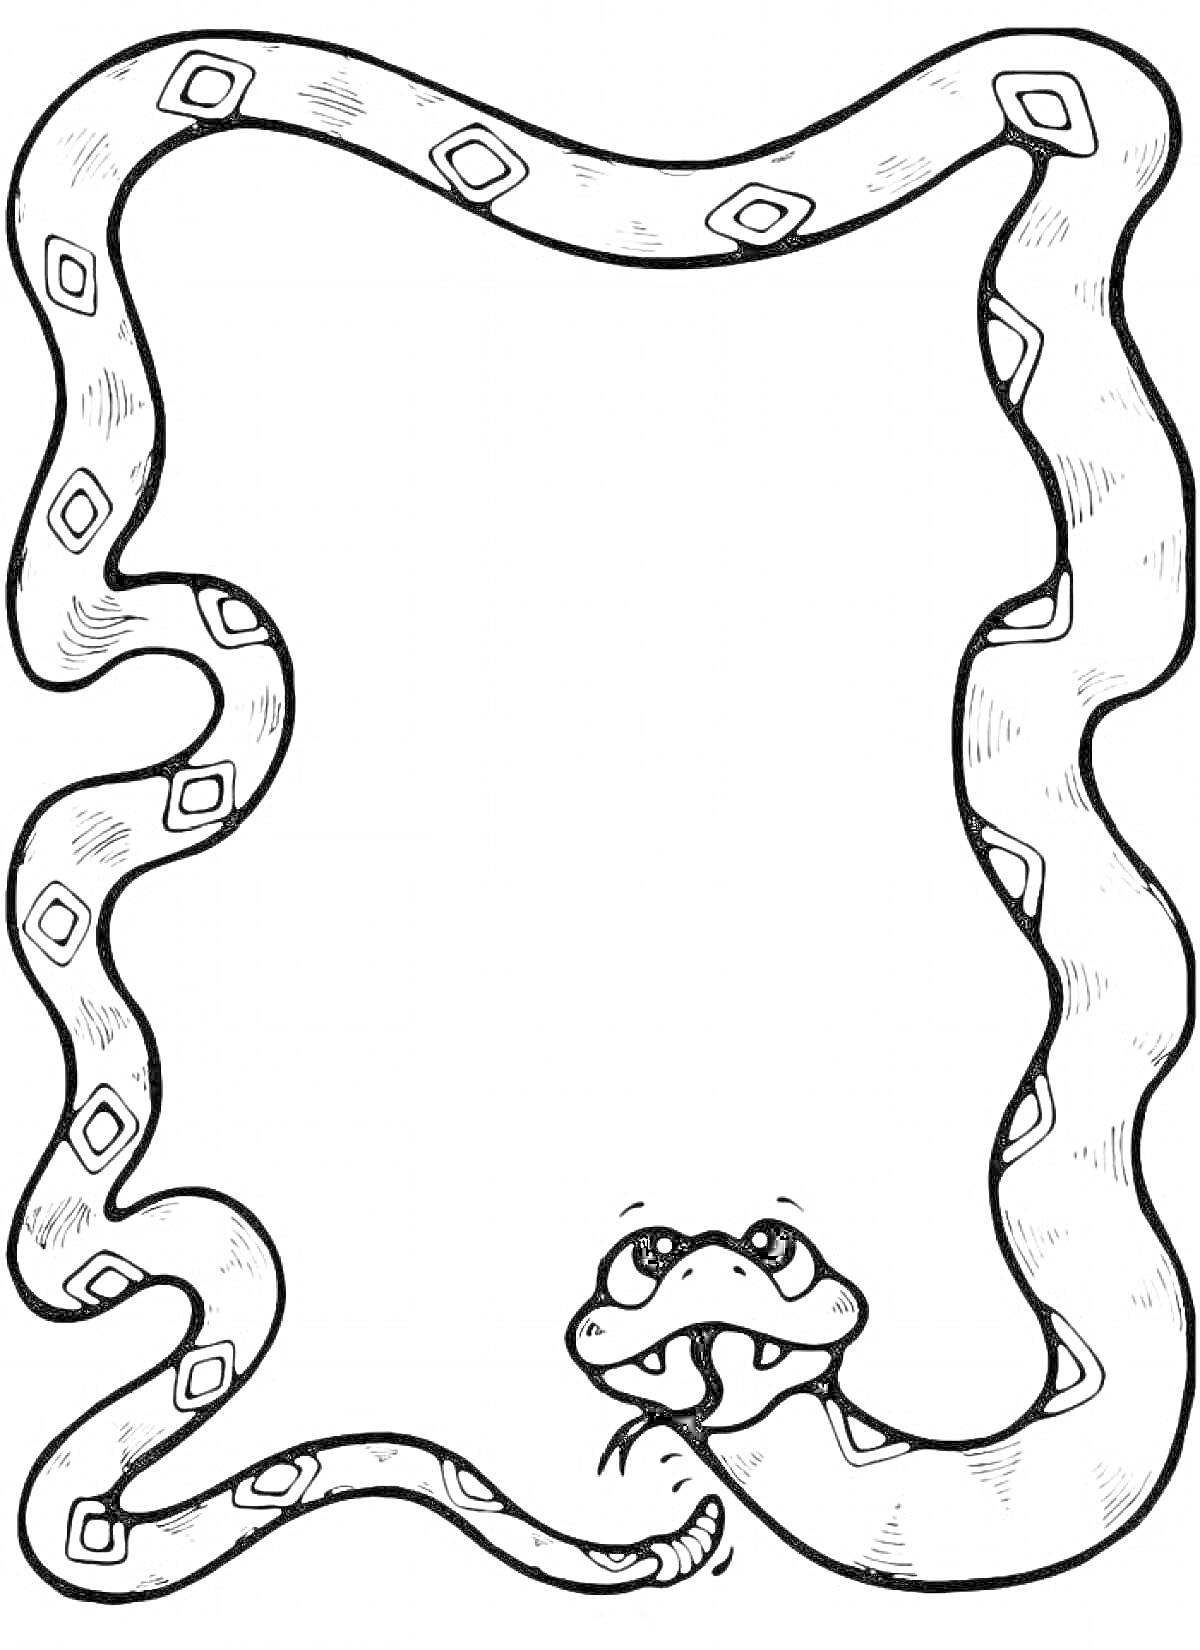 Раскраска Змея, образующая рамку с ромбовидным узором и забавной мордочкой